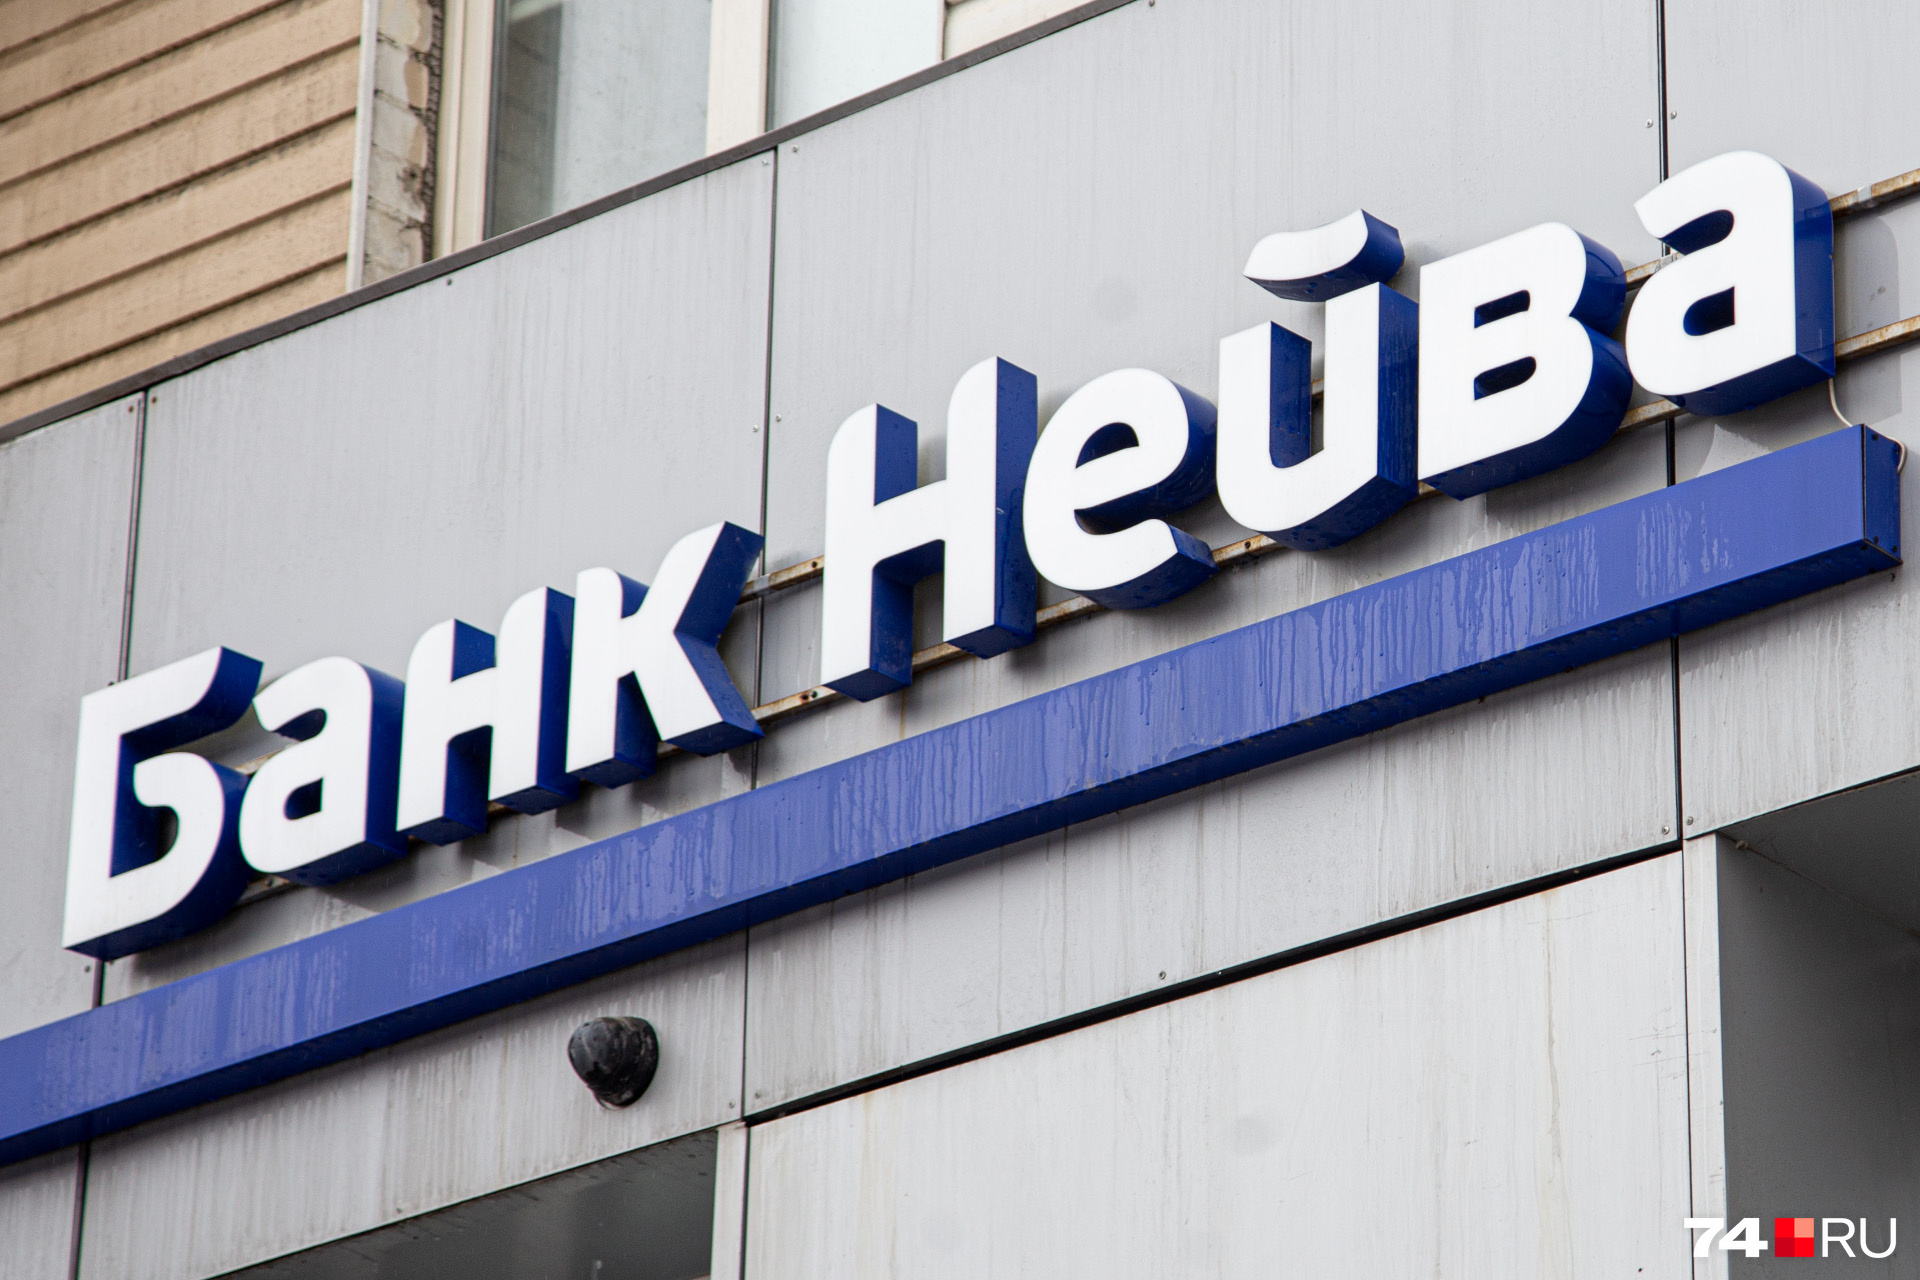 Штаб-квартира этого банка расположена в Екатеринбурге